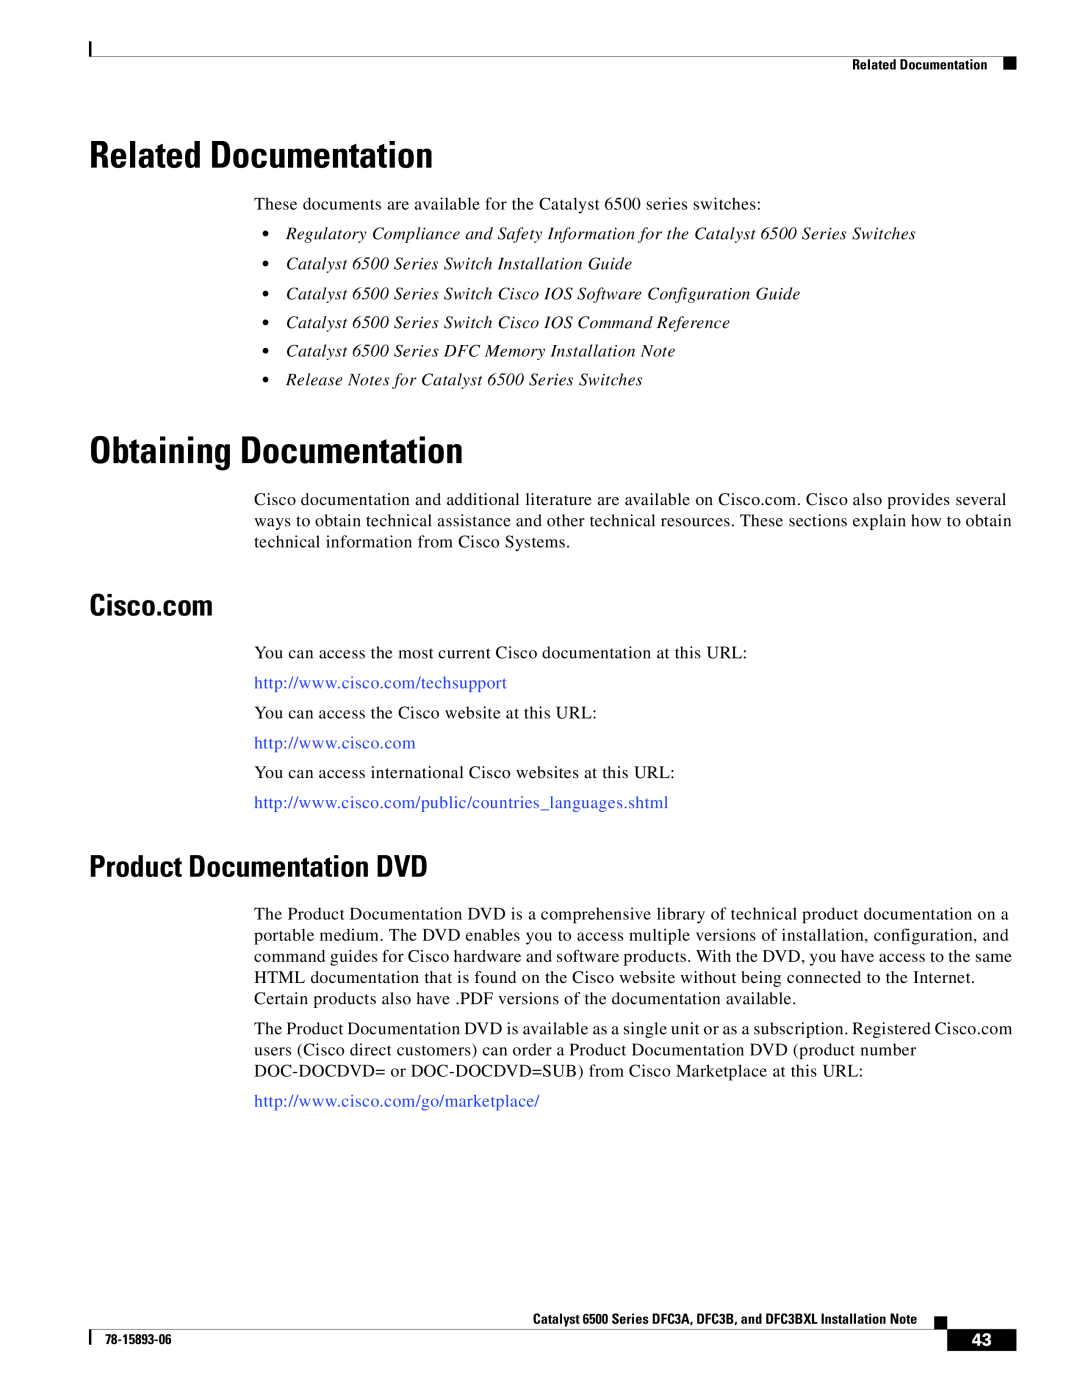 Cisco Systems DFC3BXL, DFC3A manual Related Documentation, Obtaining Documentation, Cisco.com, Product Documentation DVD 